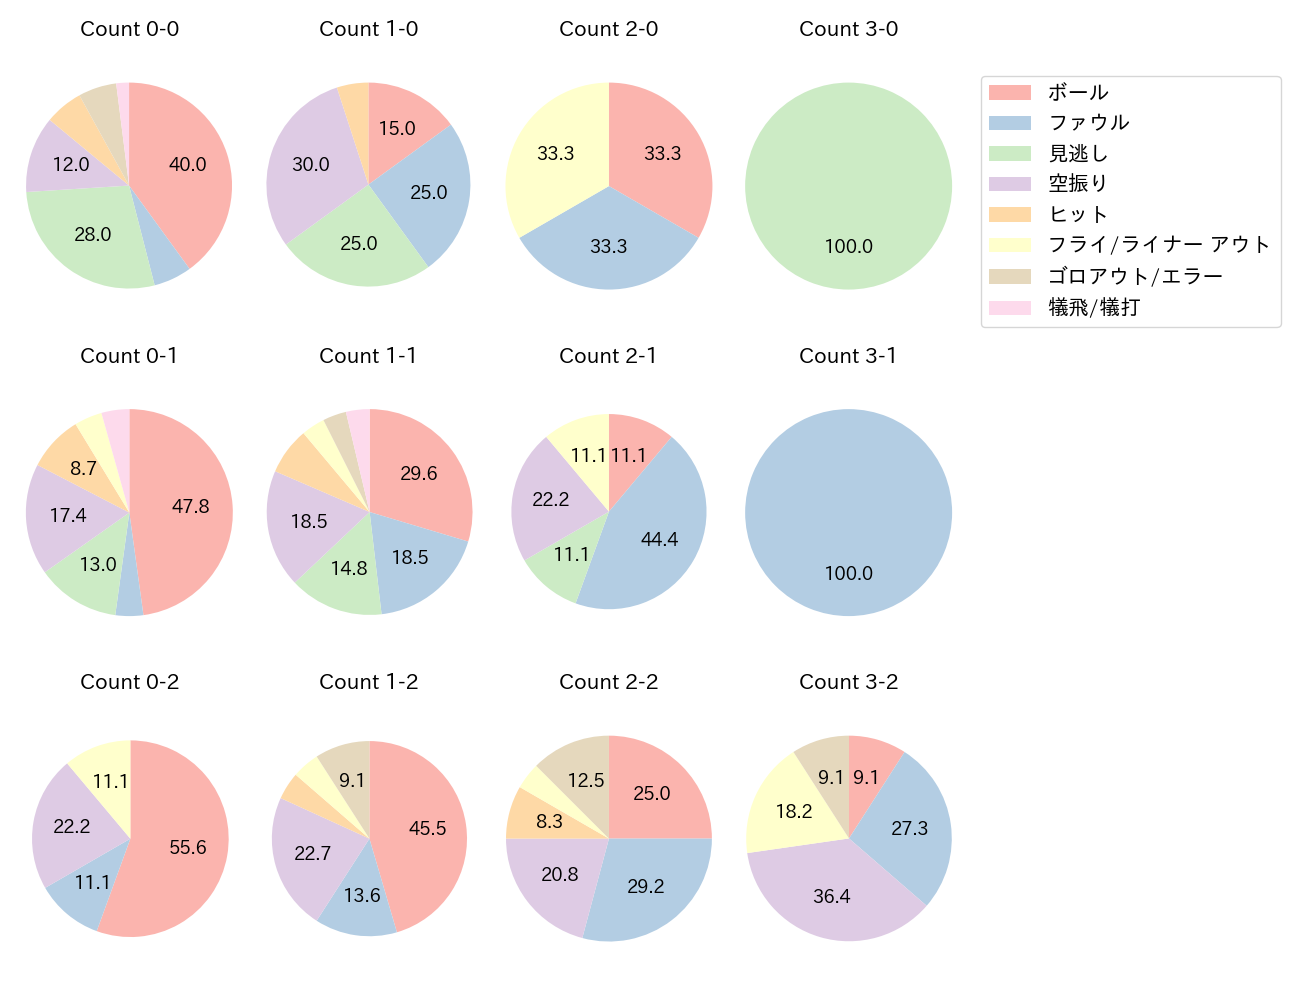 堂林 翔太の球数分布(2022年6月)